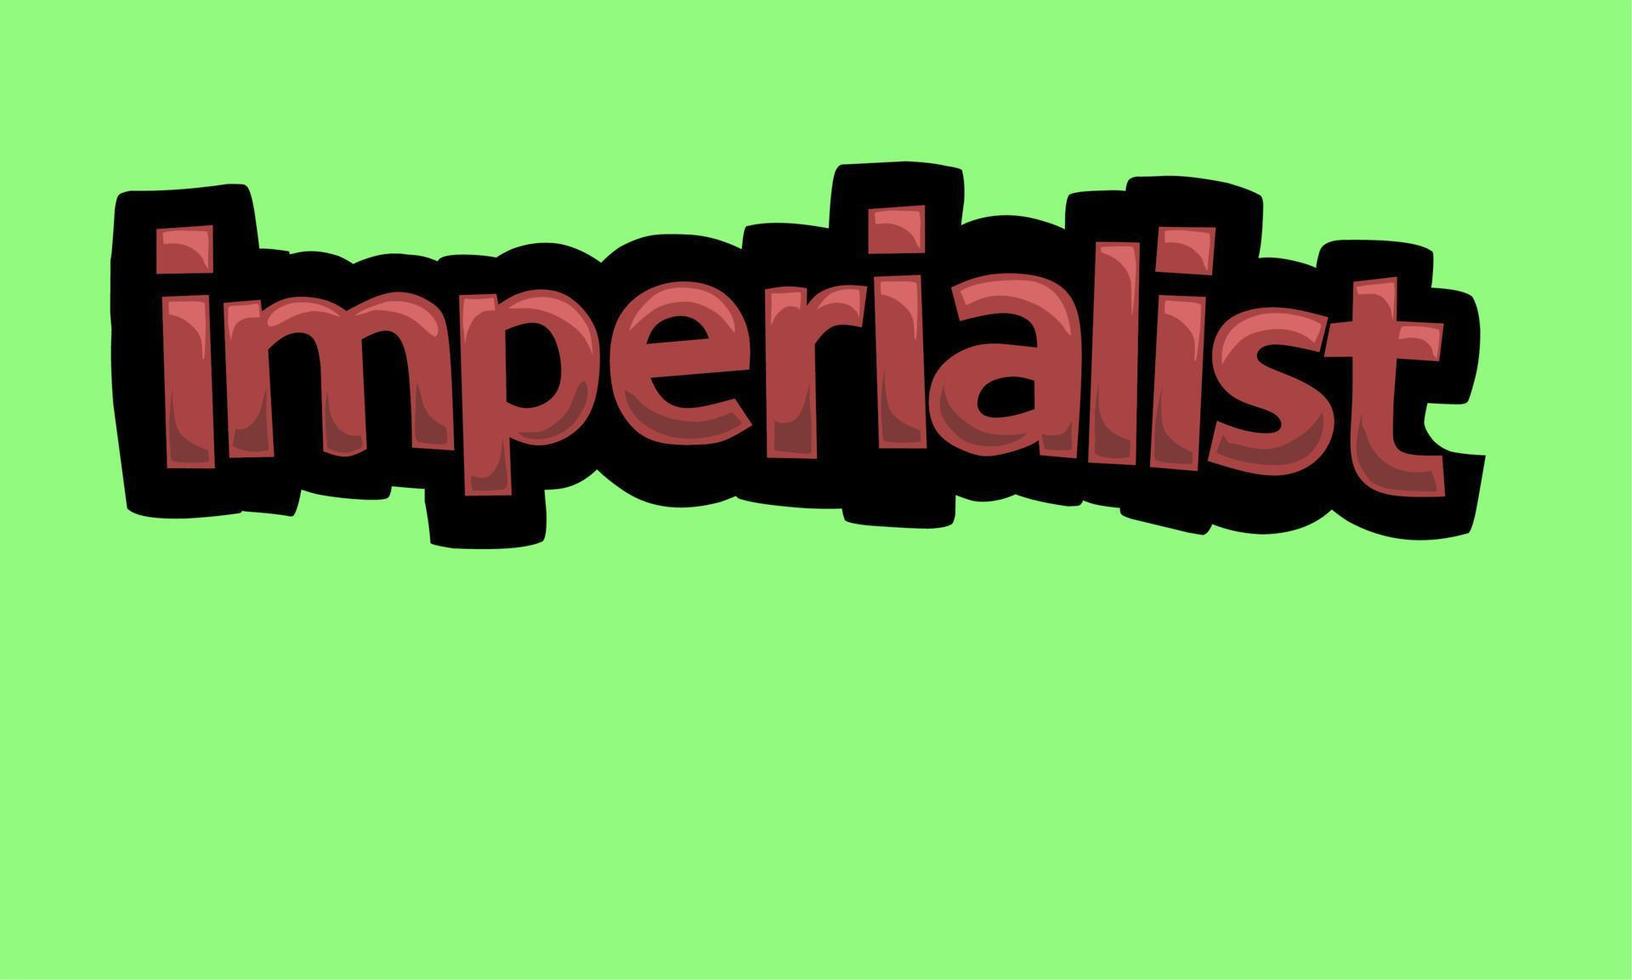 conception de vecteur d'écriture impérialiste sur fond vert